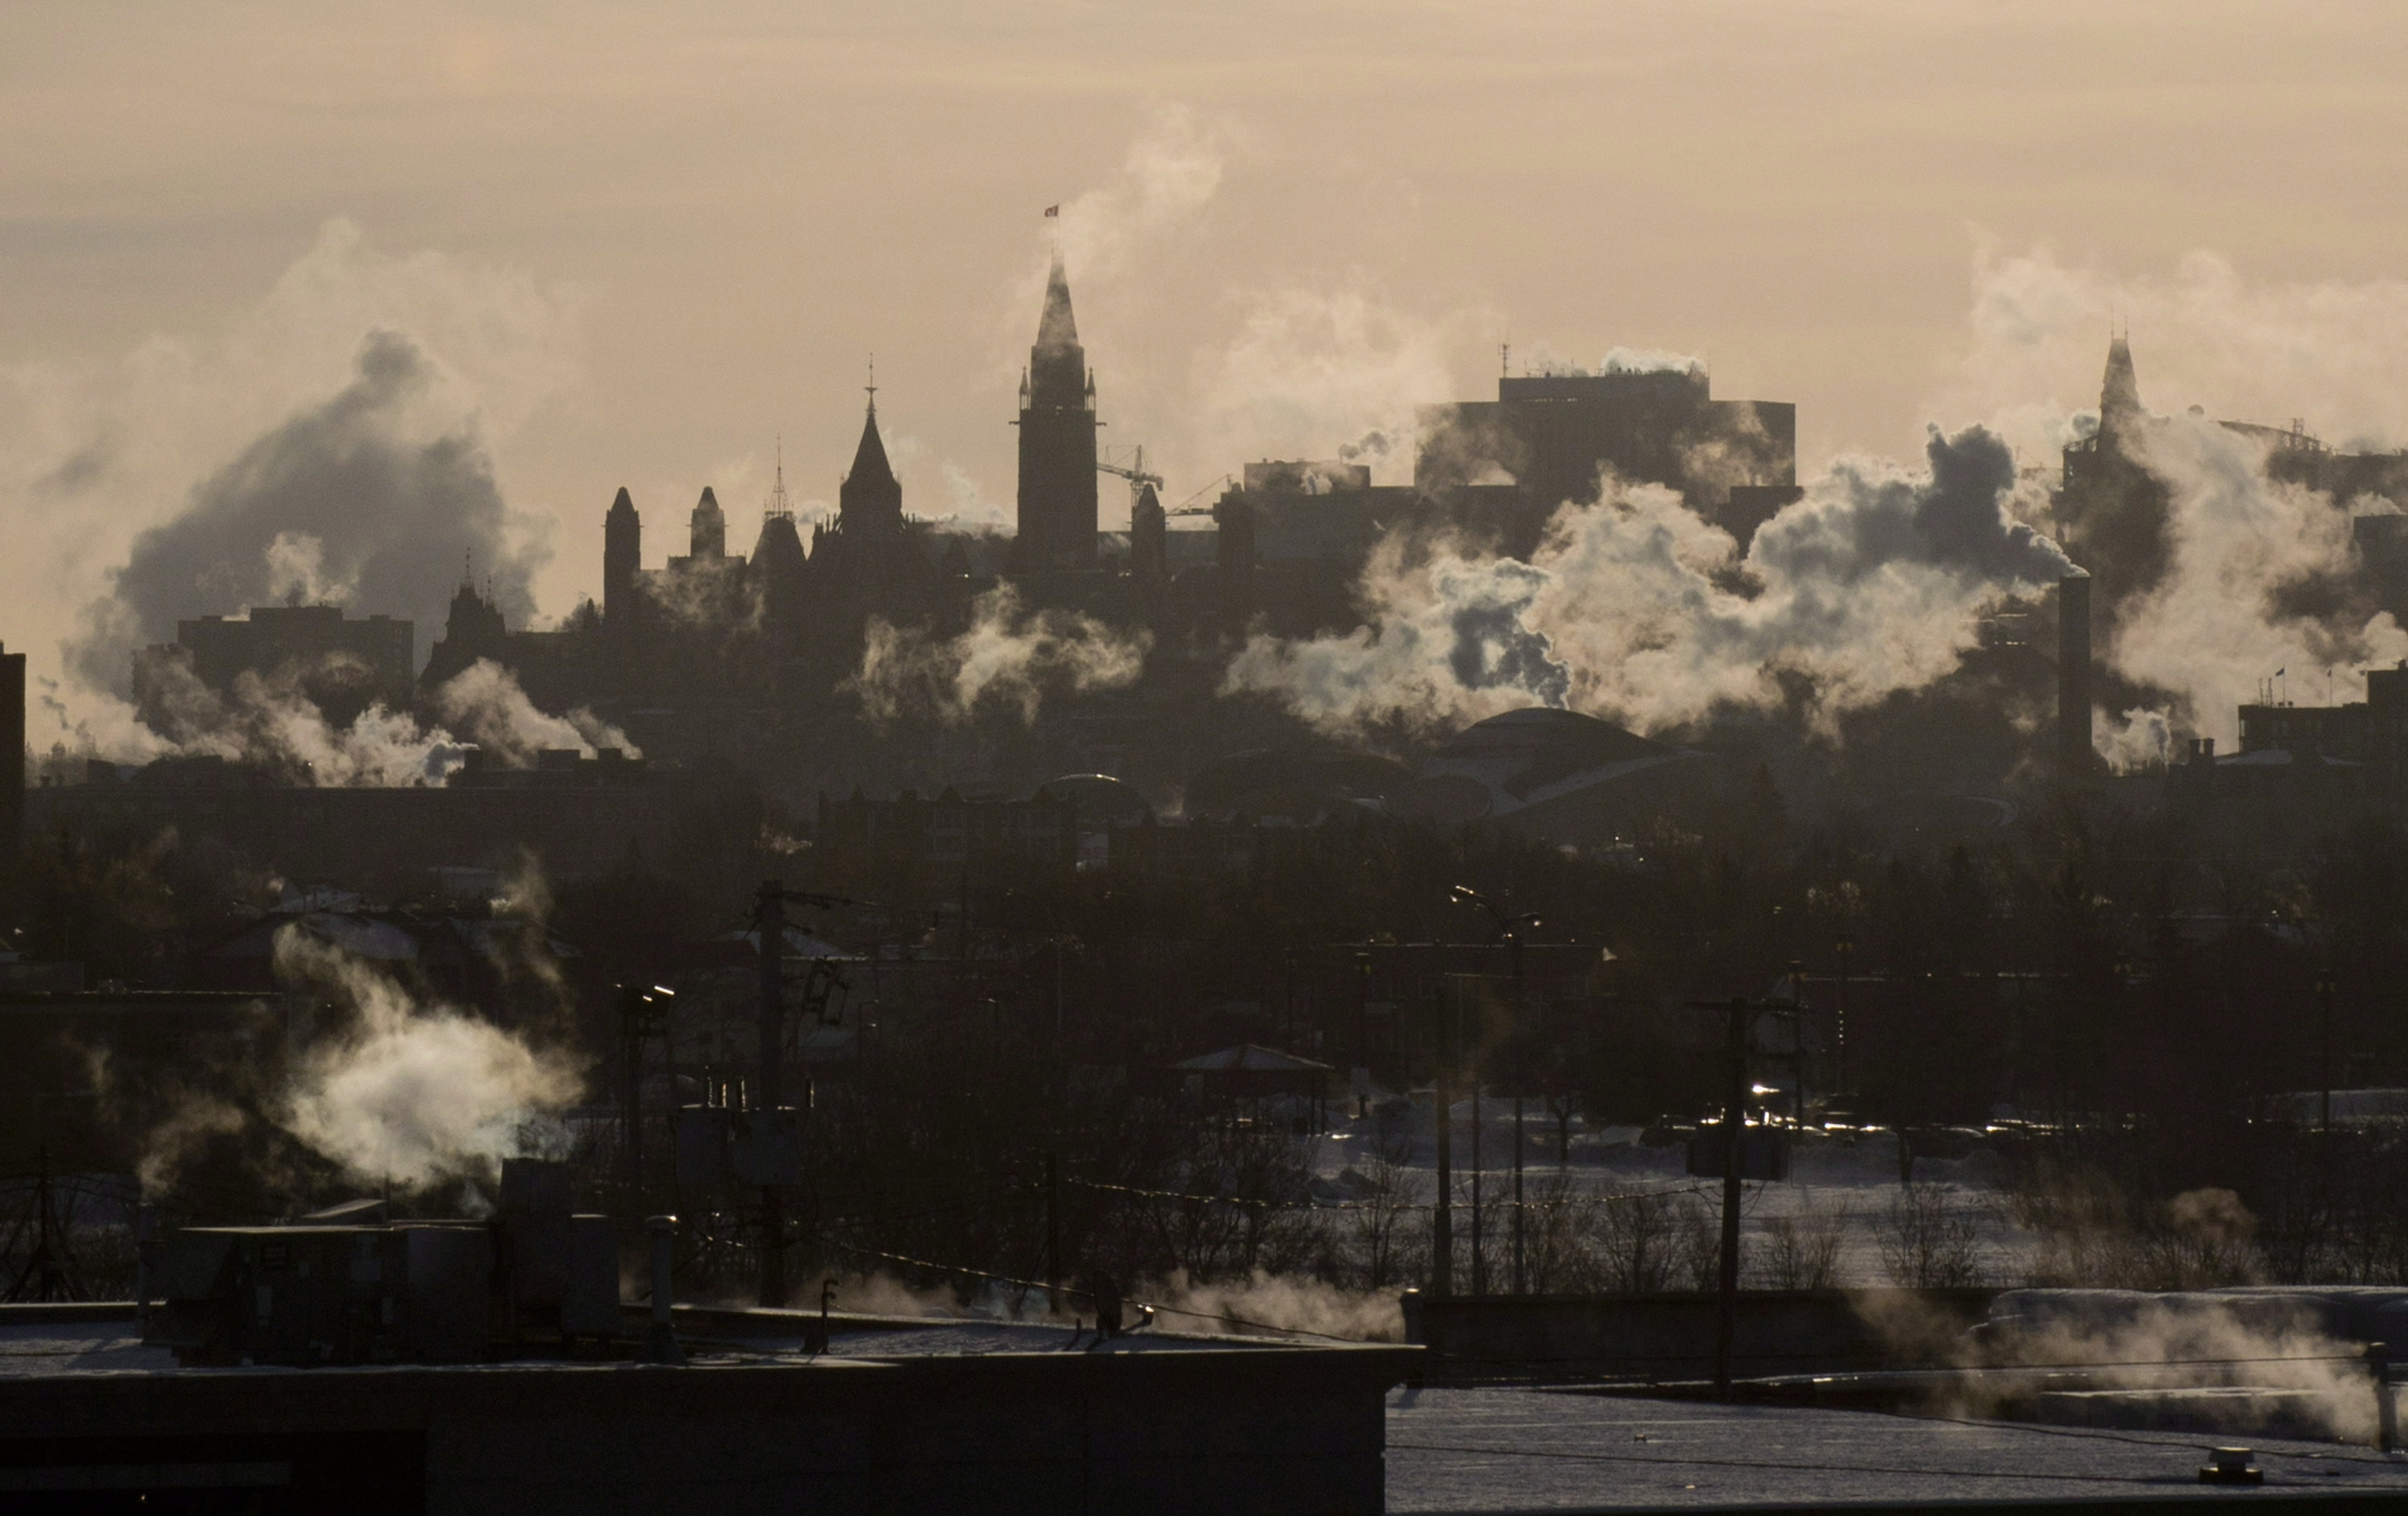 větry foukají páry z budov na panorama Ottawy, když se teploty vznášely poblíž-40C s windchill v Ottawě, čtvrtek 24. ledna 2013.